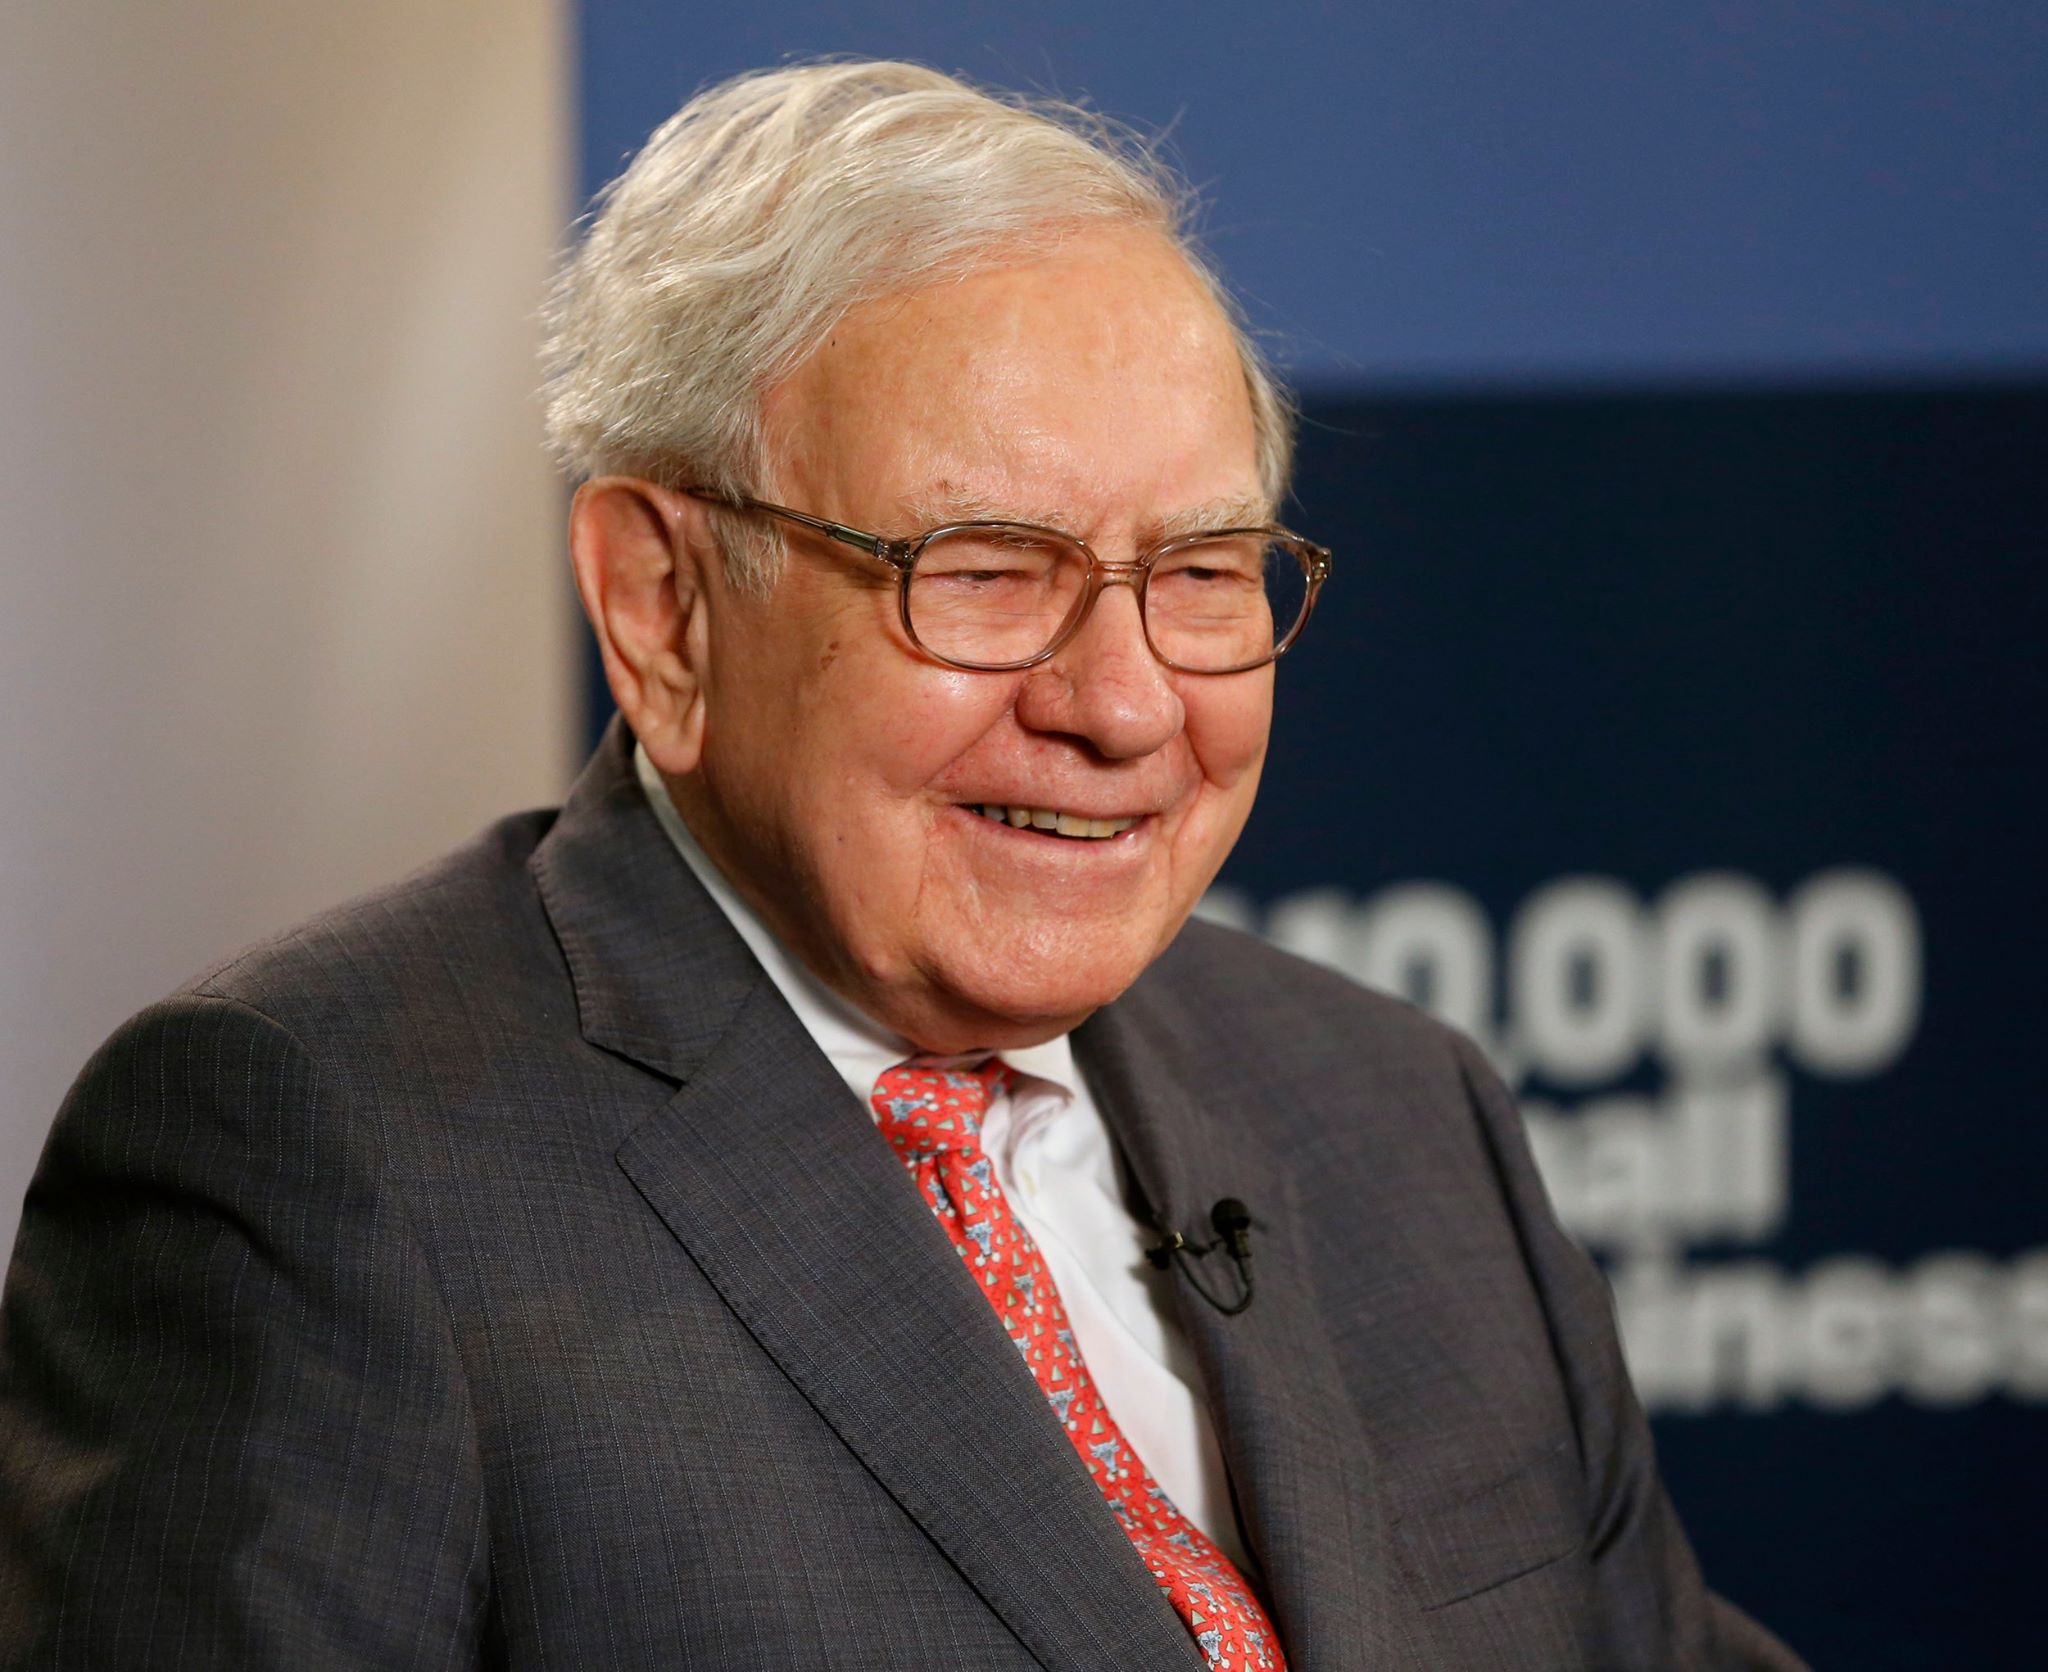 Warren Buffett Biography, Age, Wife, Family, Net Worth & More 3